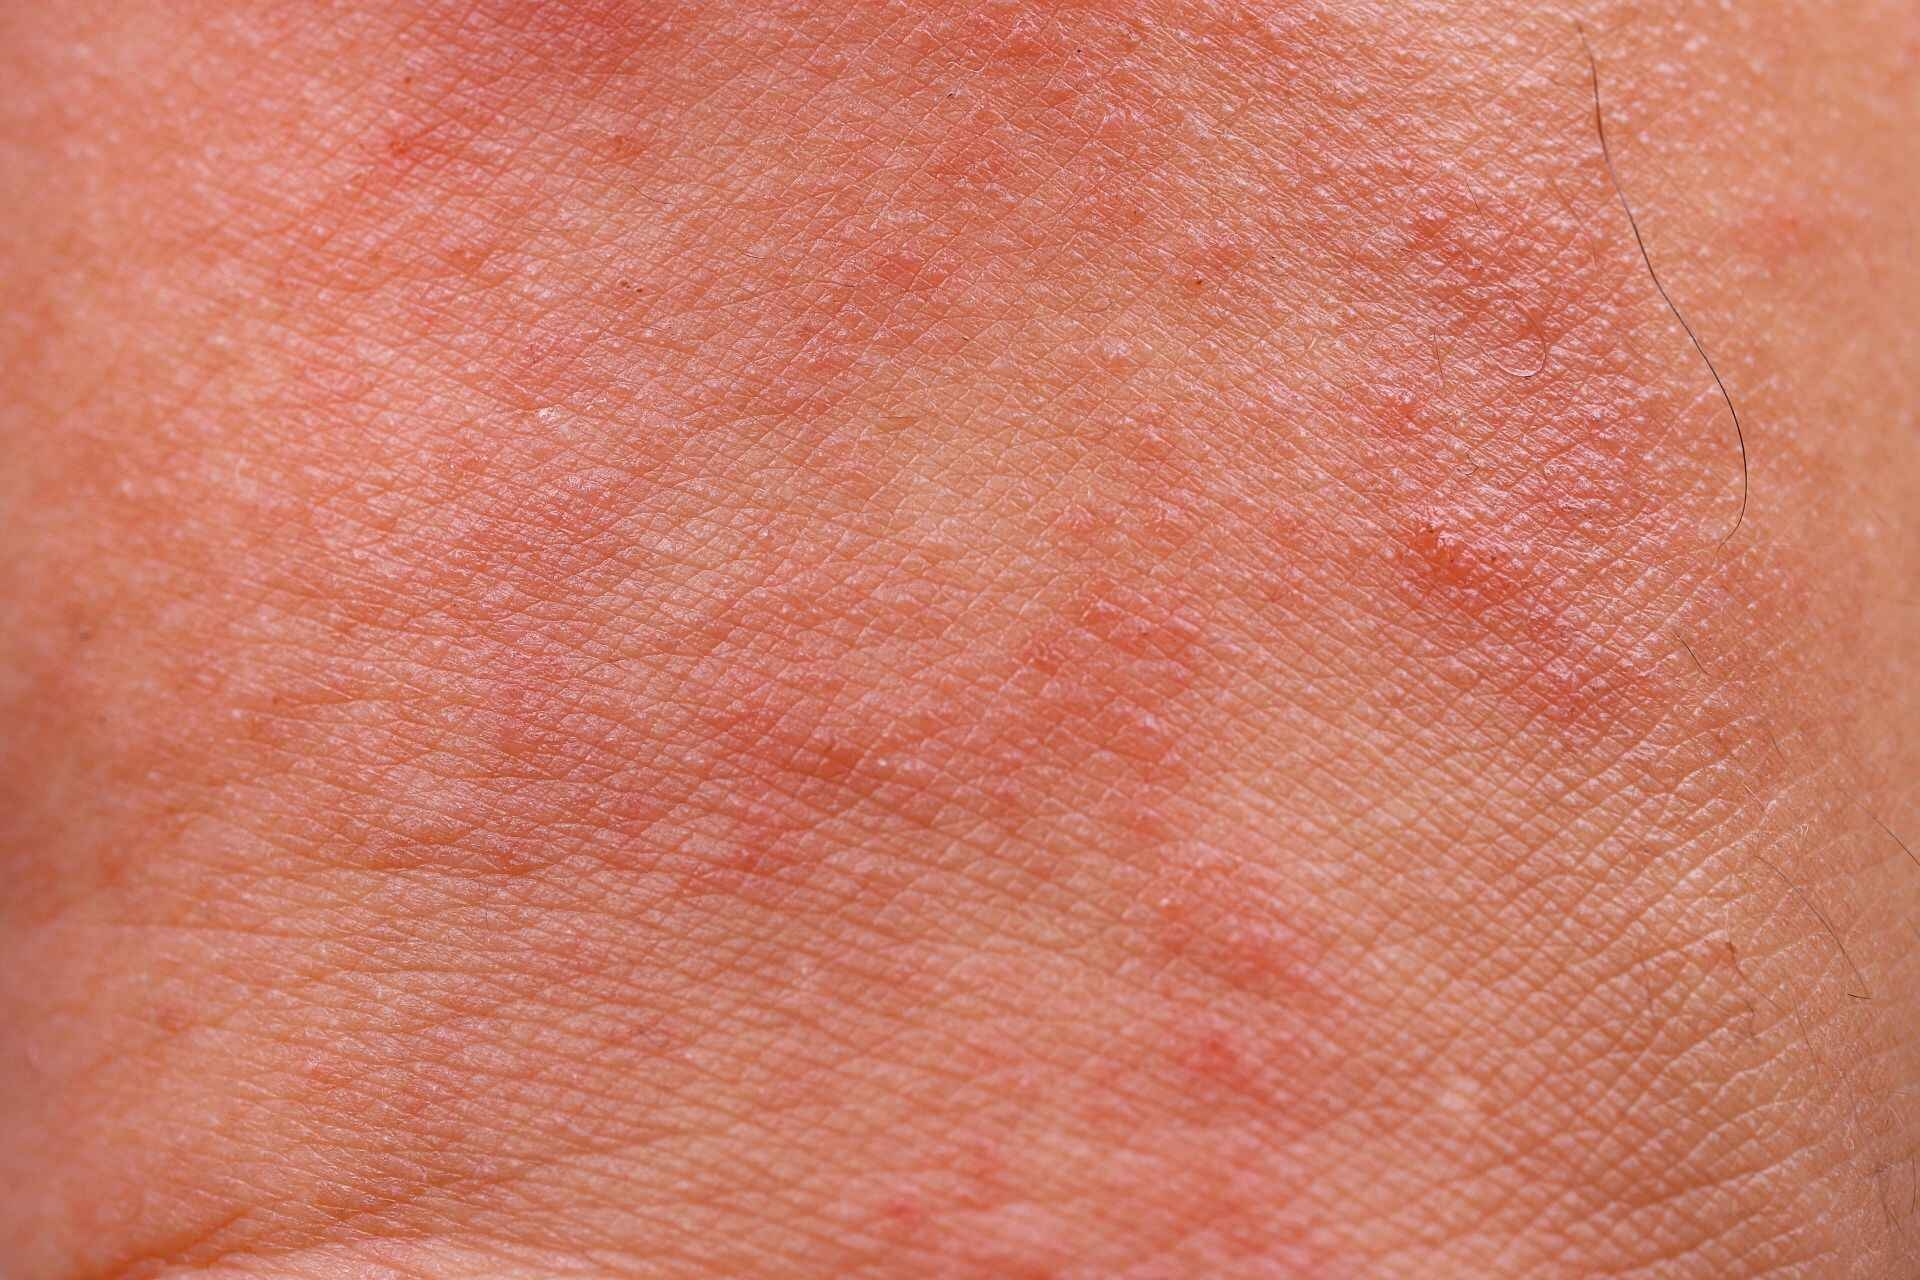 Dermatite: in natura esistono diverse tipologie di dermatite e spesso non se ne comprende la causa